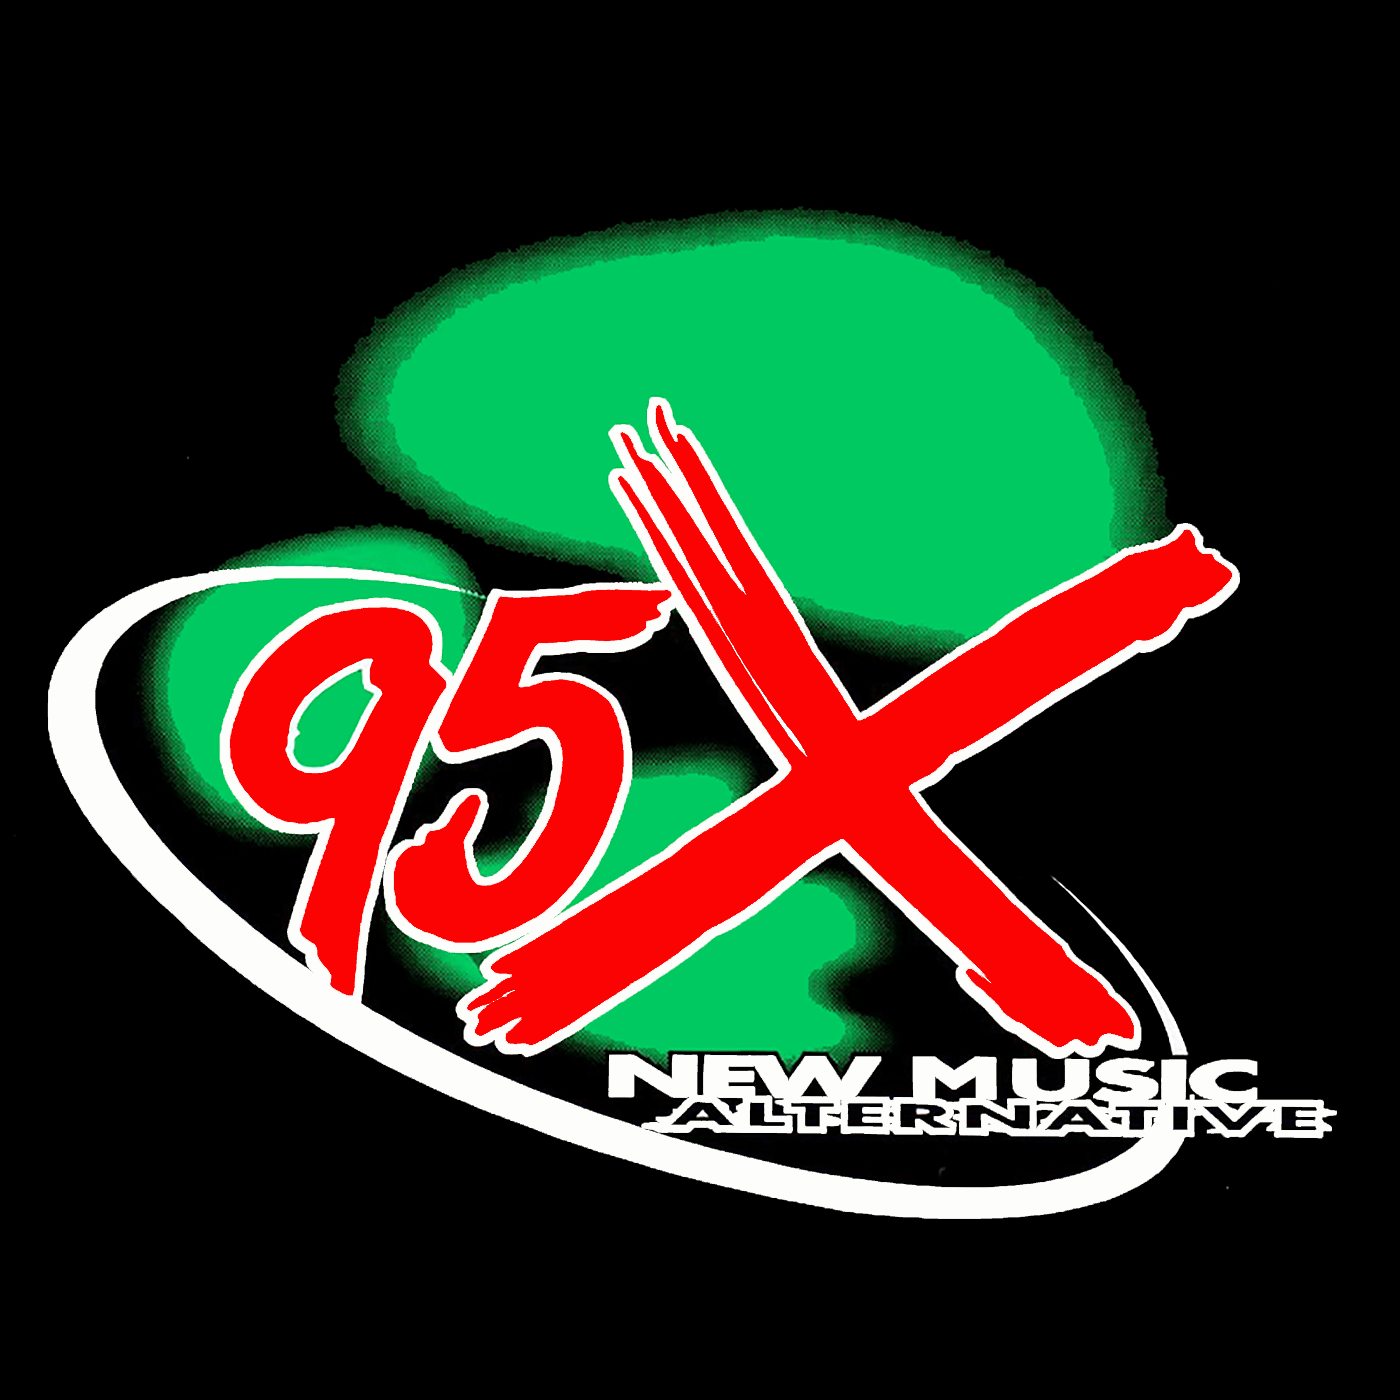 95x-logo-1400x1400-2